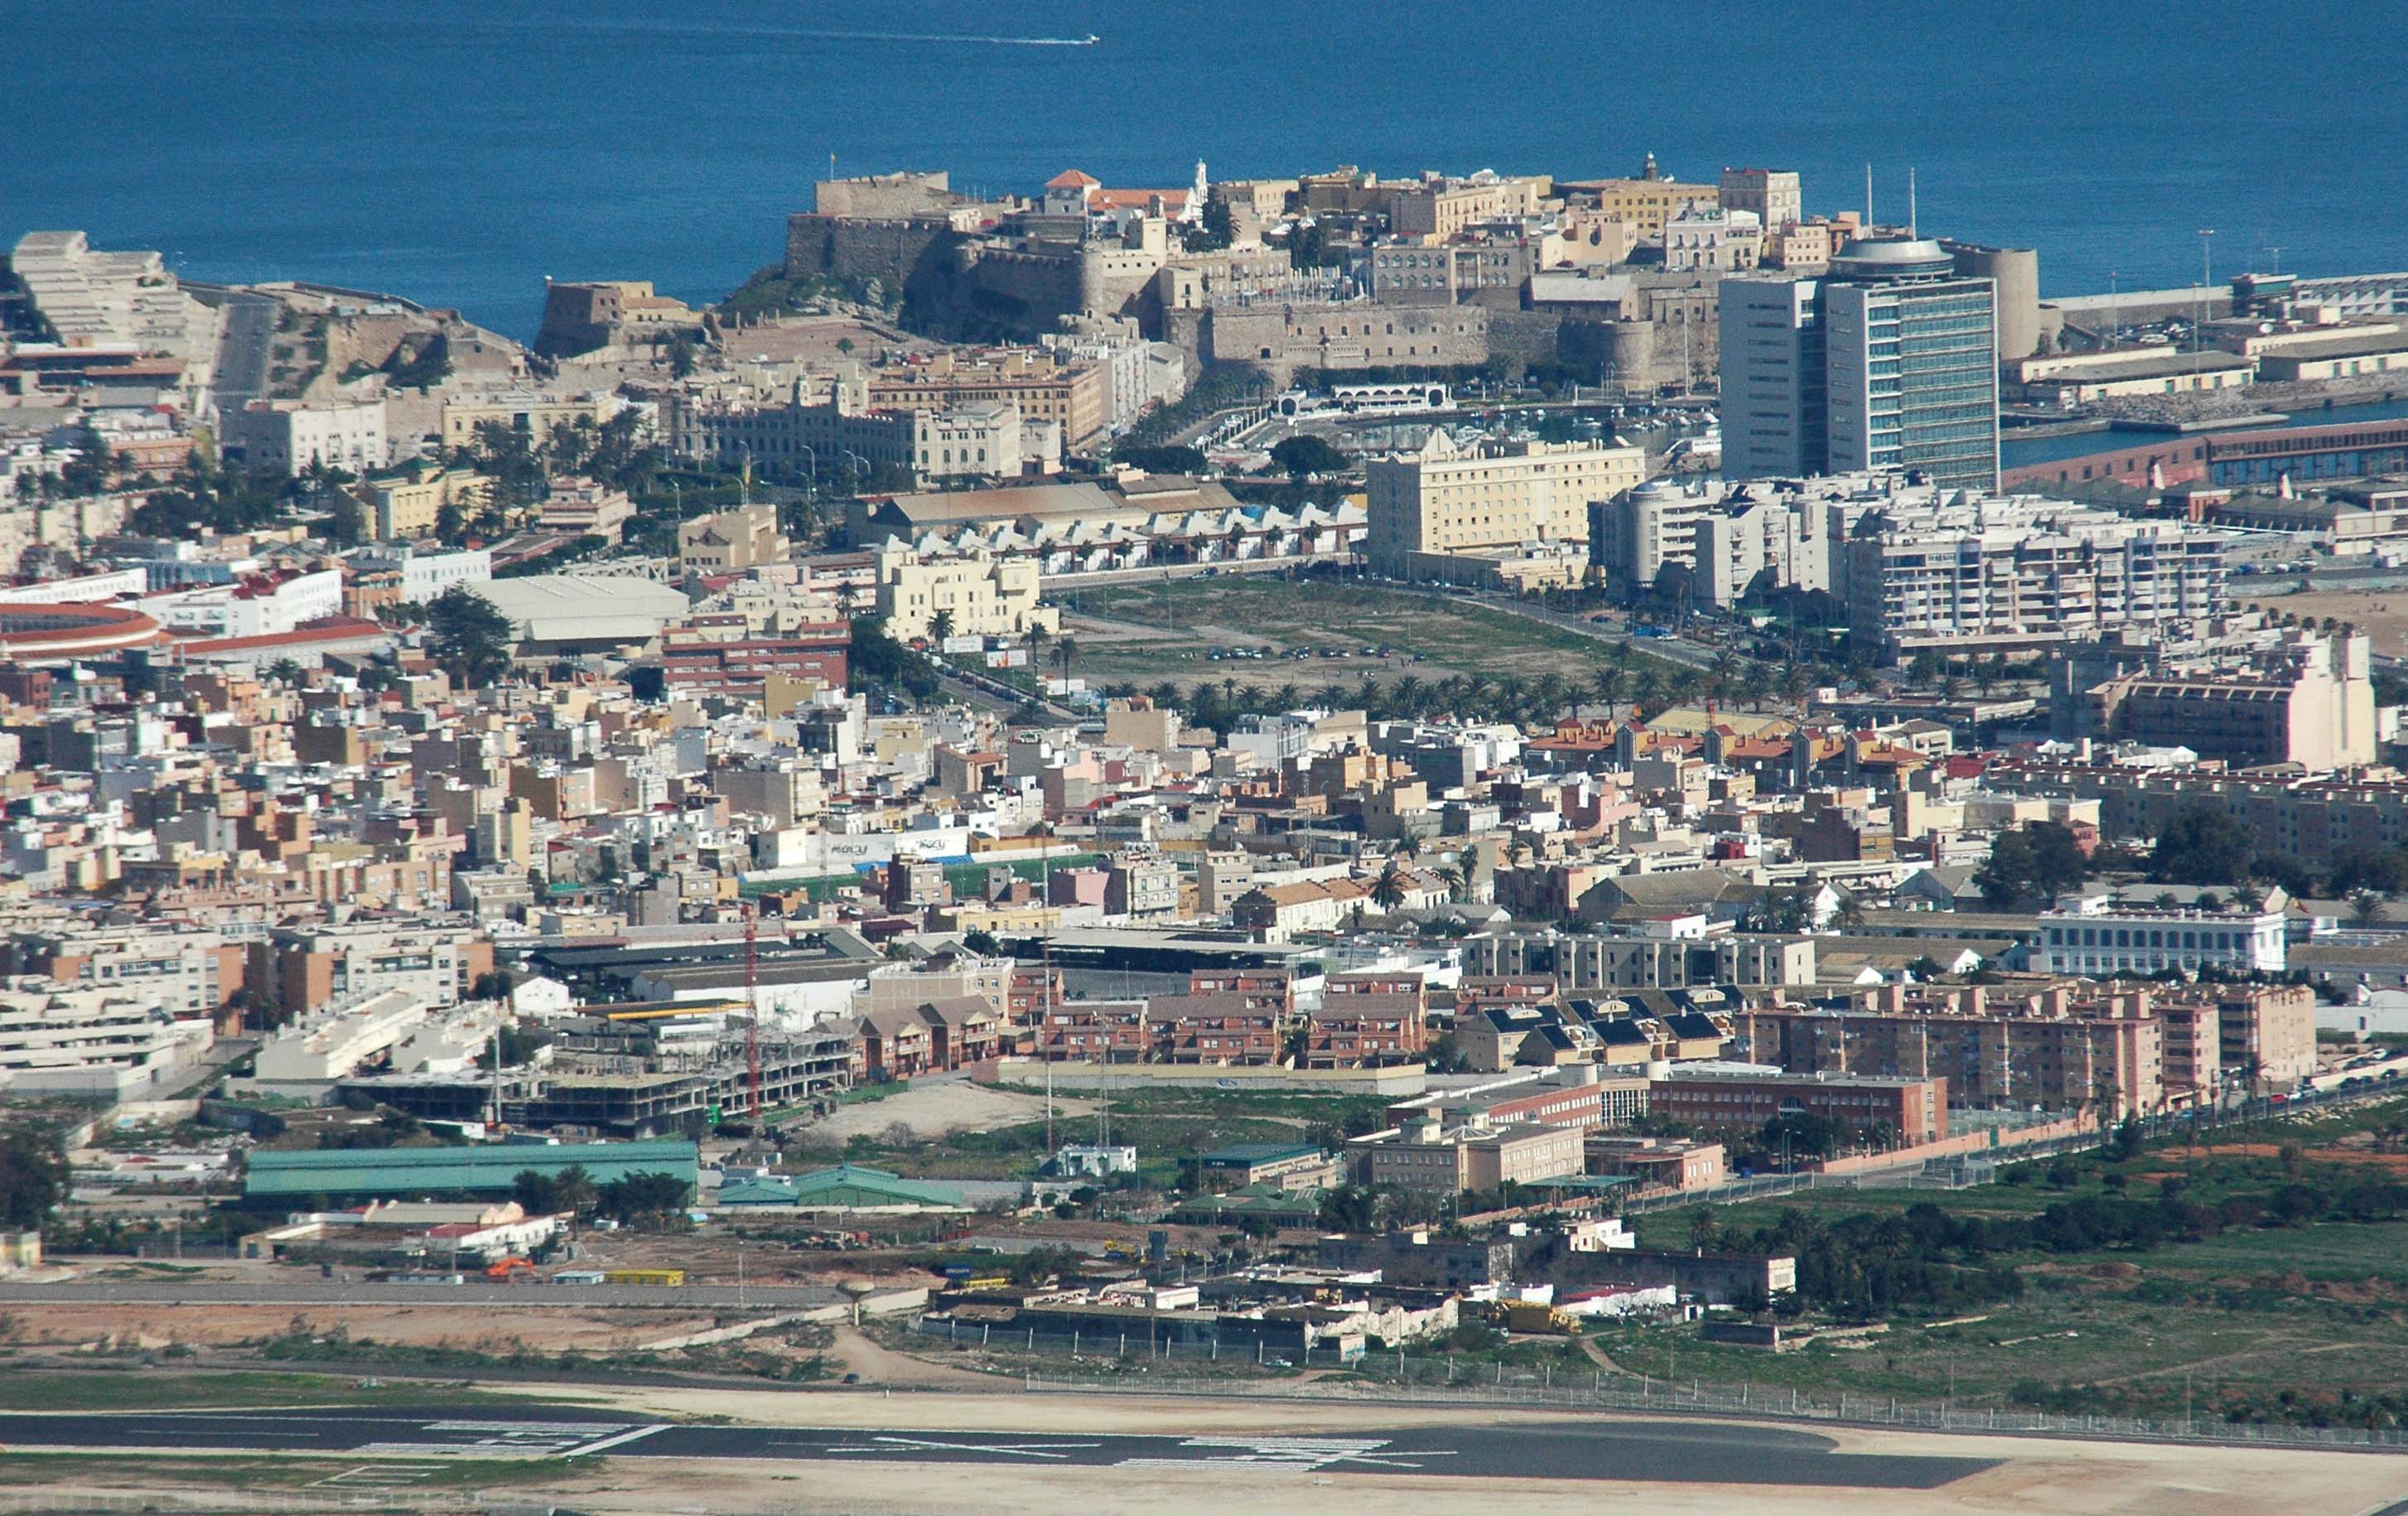 Israel i el Marroc planegen una base militar conjunta a la rodalia de Melilla